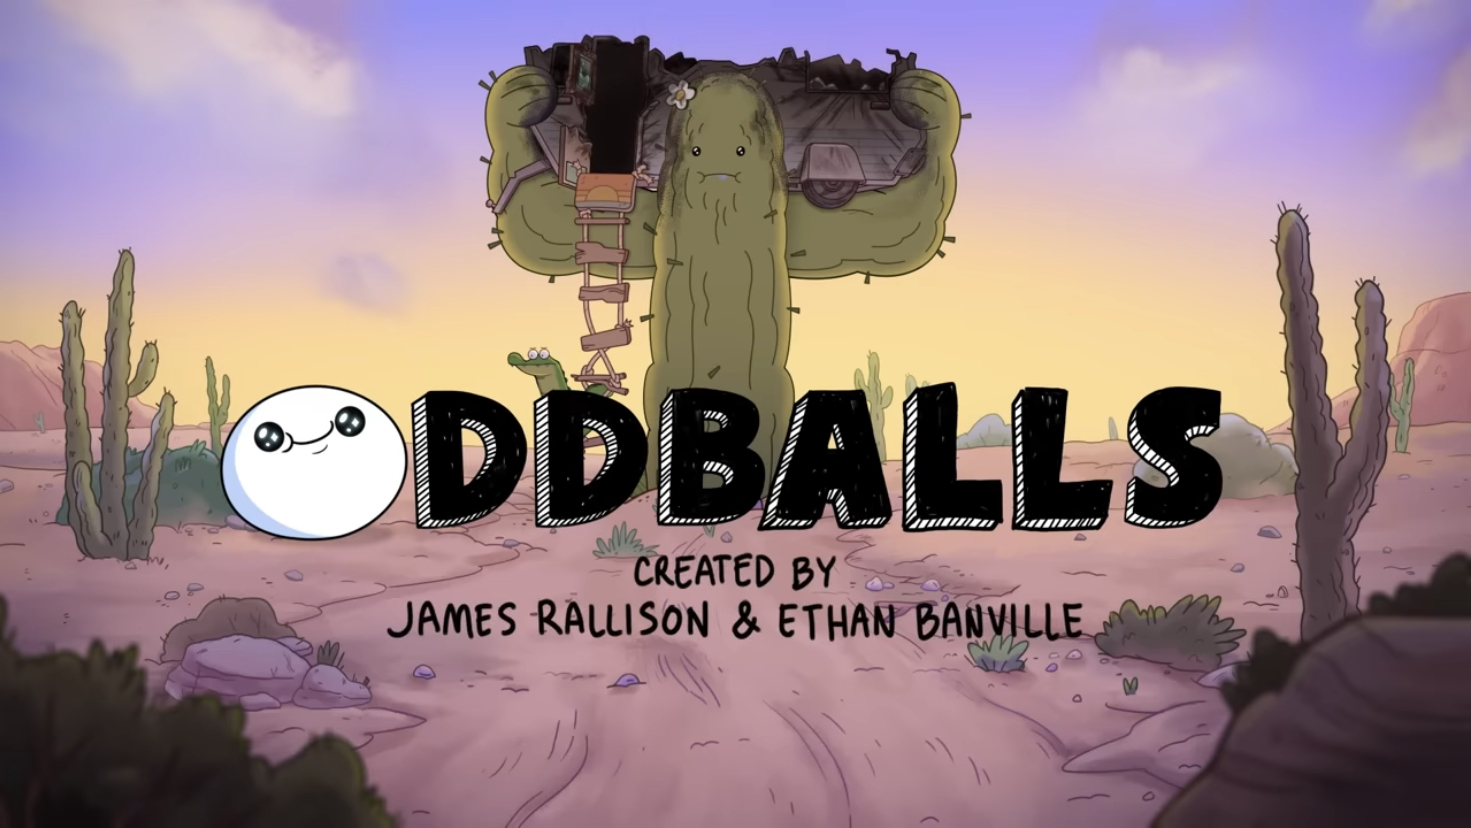 Oddballs Premiere – The Odd 1s Out